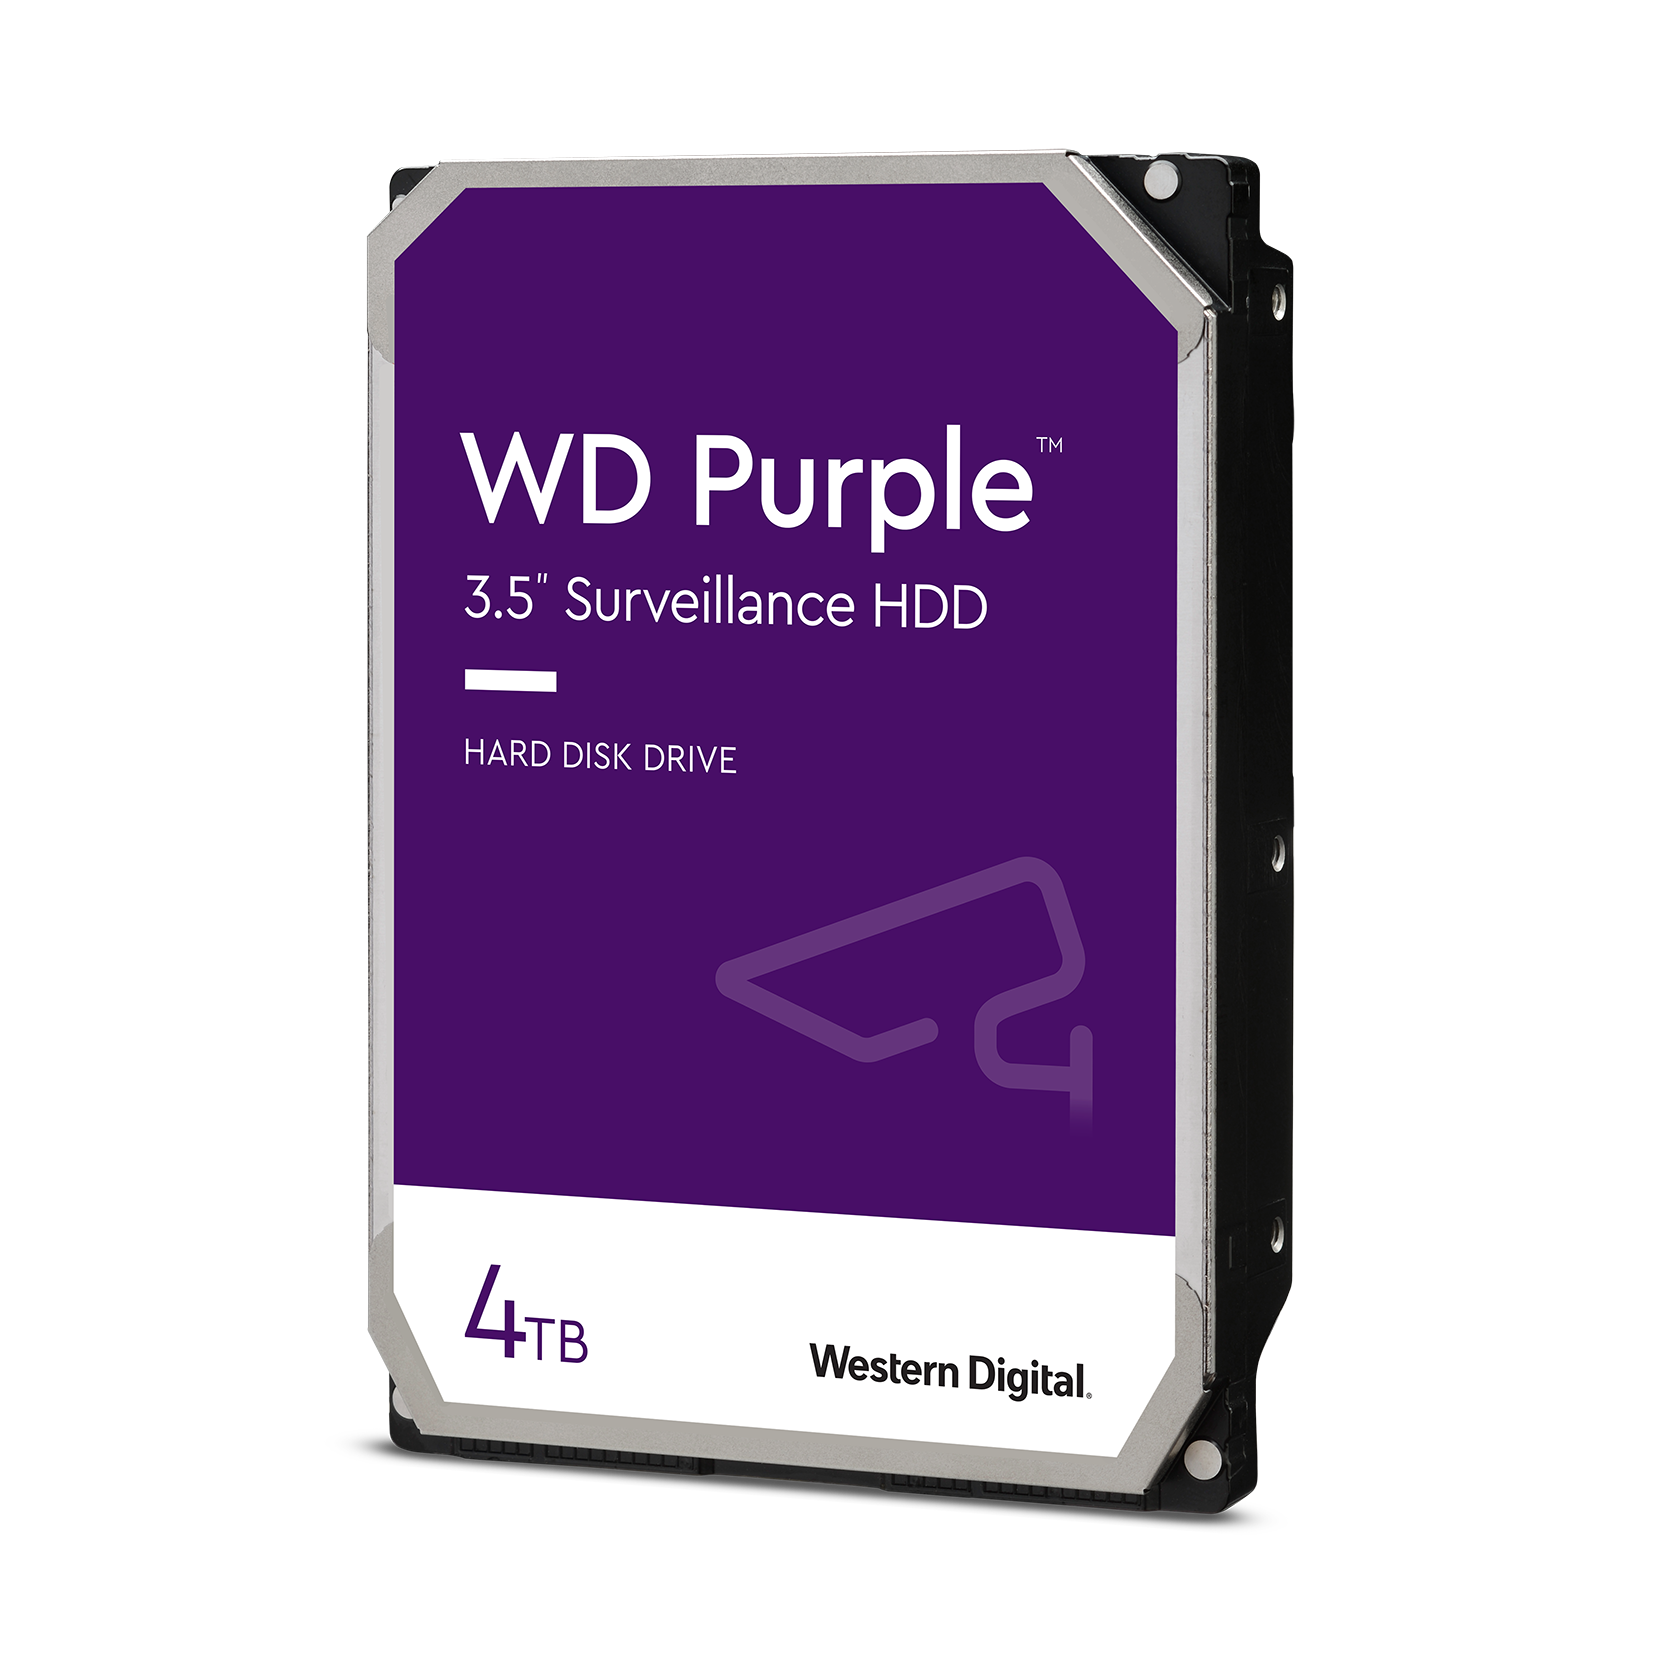 Western Digital 4TB WD Purpleâ„¢ Surveillance - Hard Drive - WD43PURZ